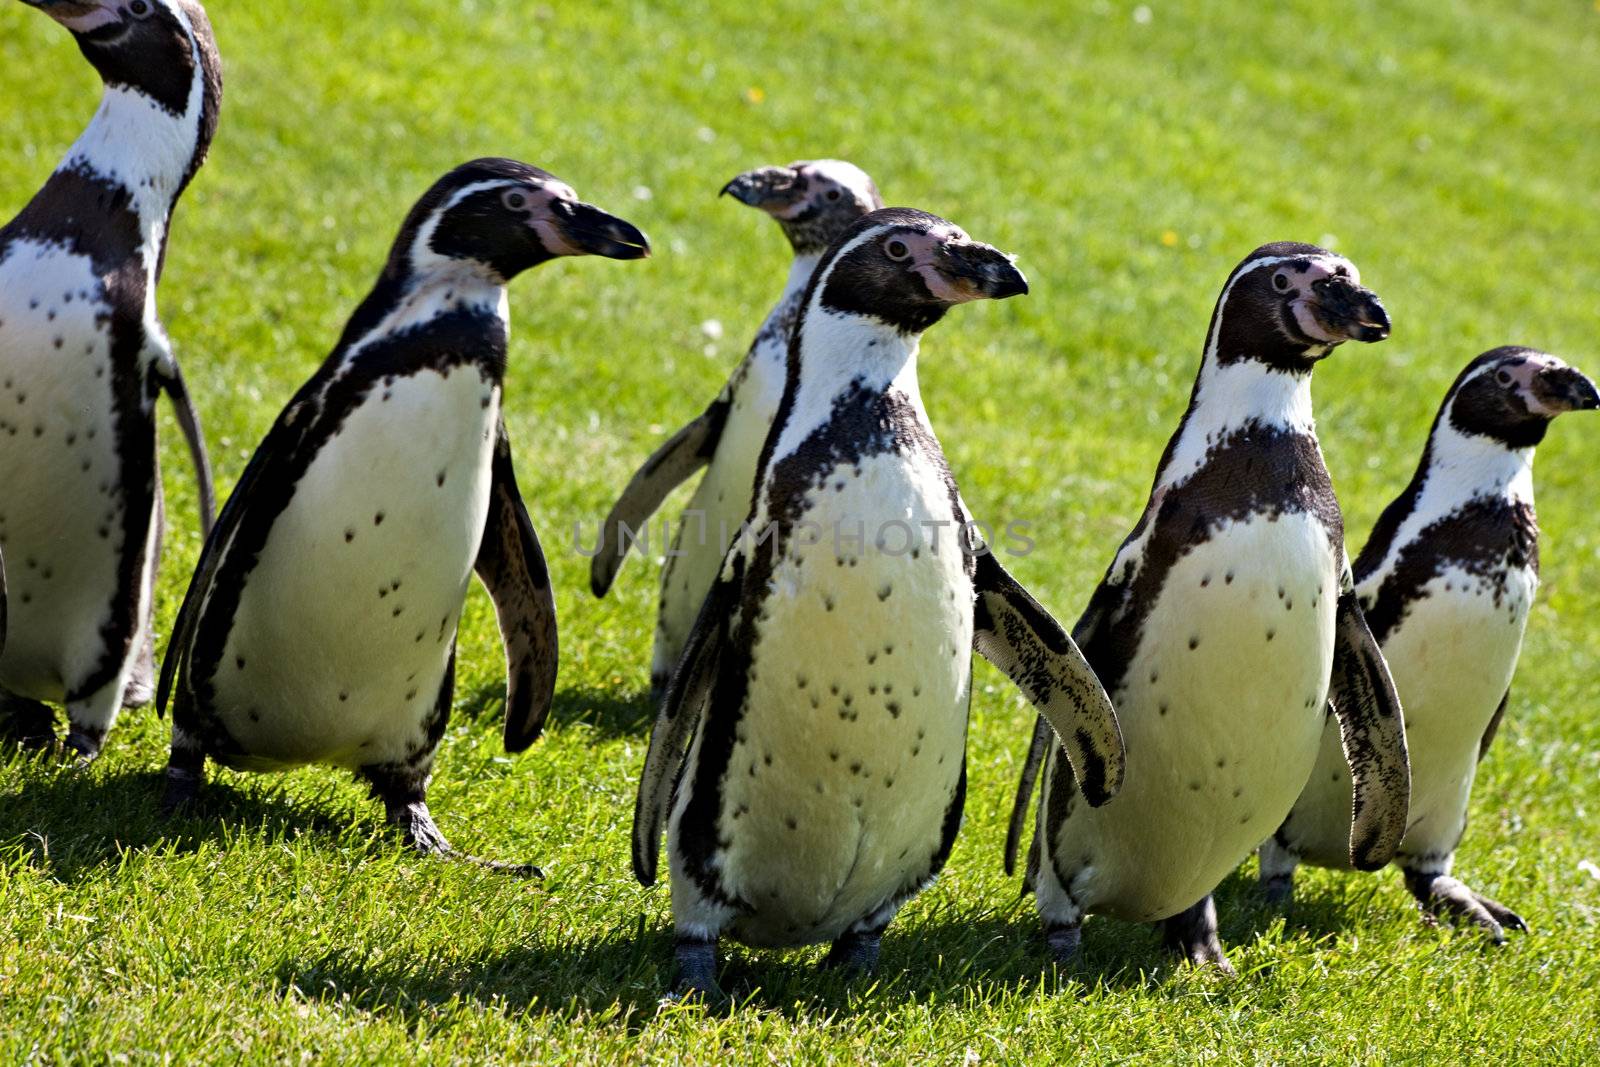 Humboldt penguins walking on grass